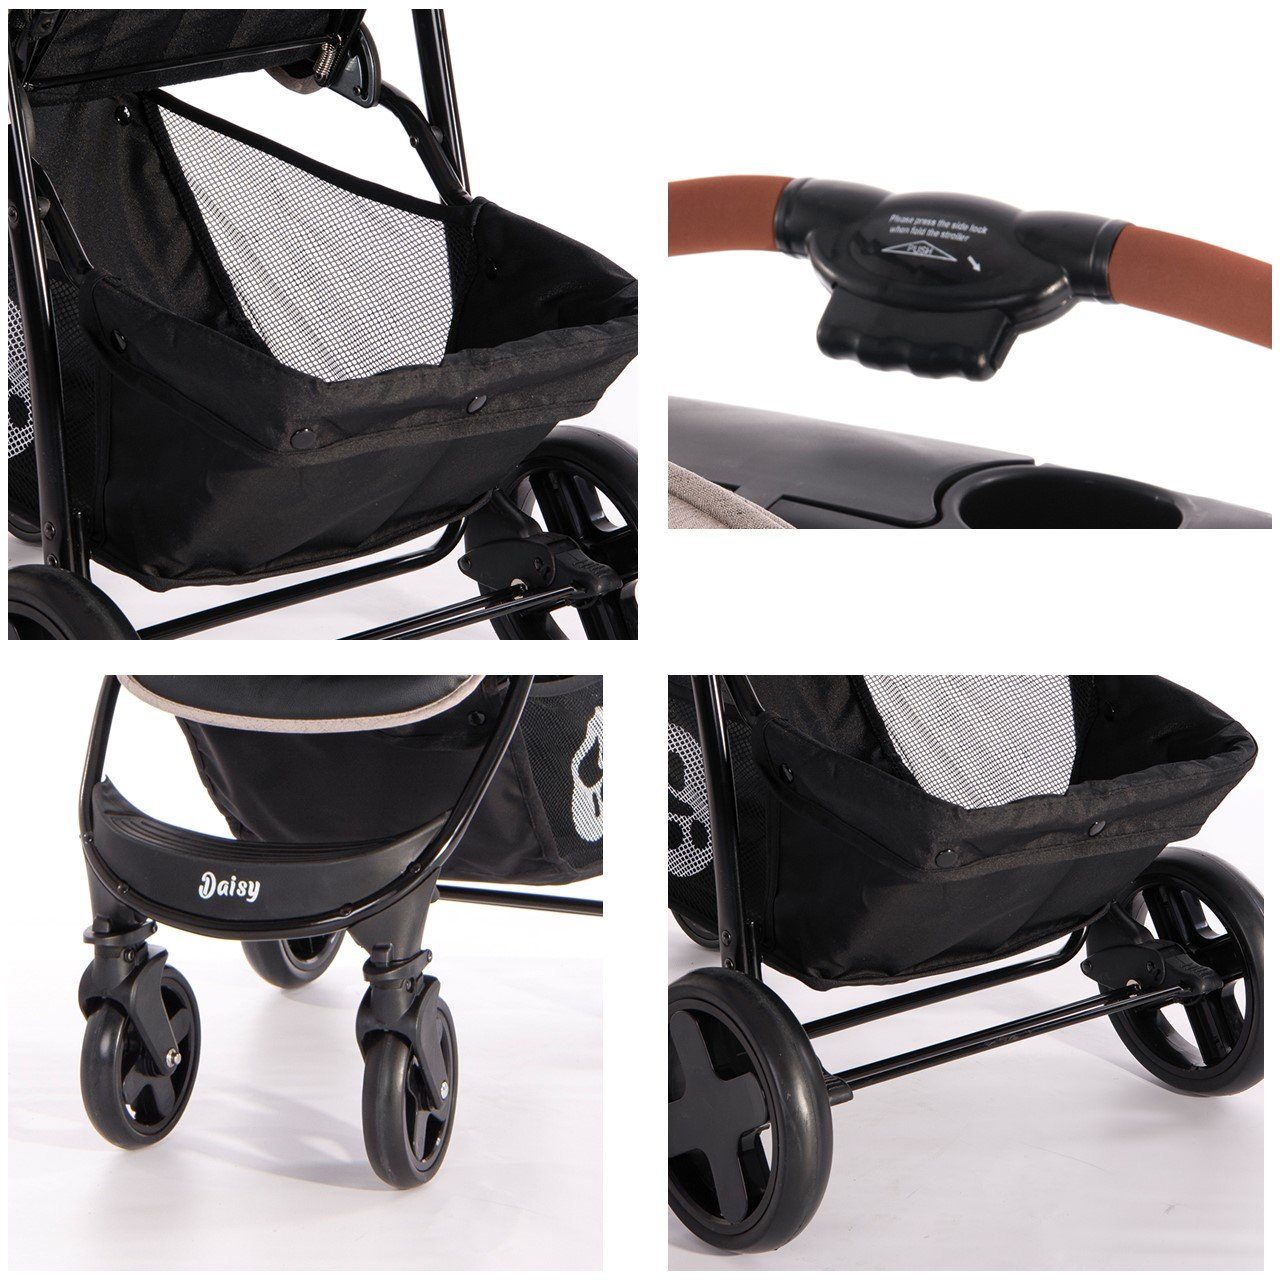 Lorelli Kinder-Buggy Kinderwagen Buggy Daisy, verstellbar, Fußsack, schwenkbare black Vorderräder